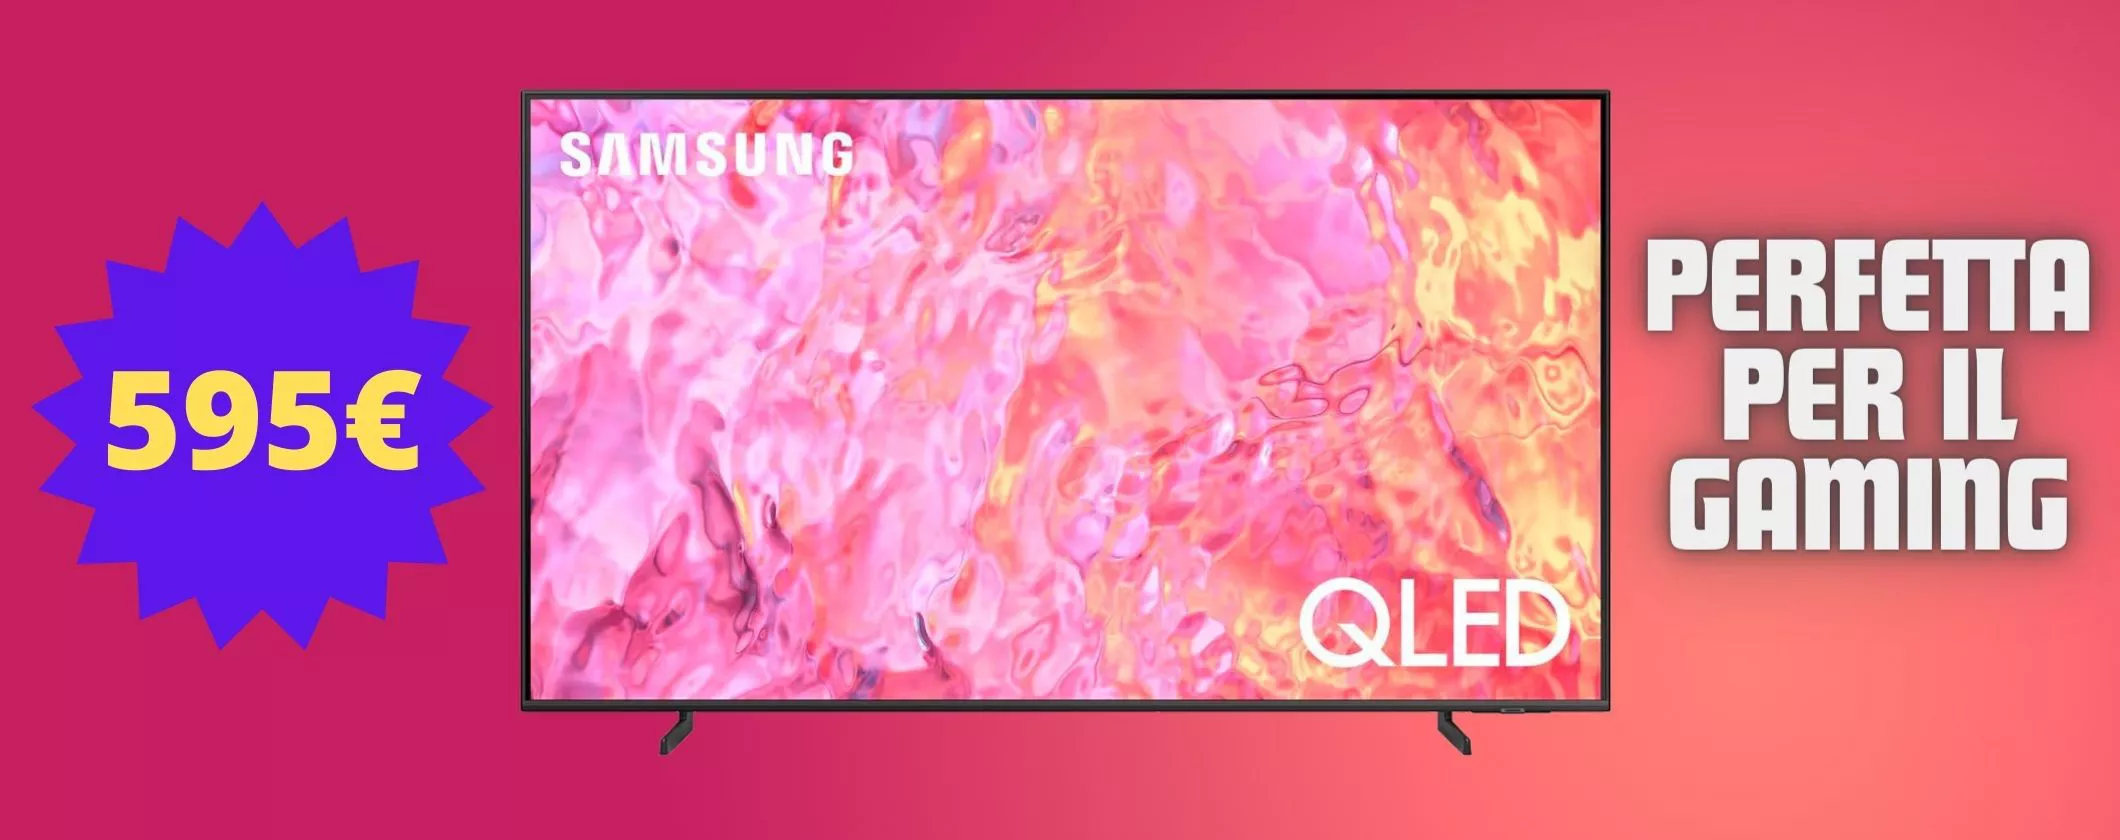 Goditi il meglio dell'intrattenimento con TV Samsung 4K in offerta